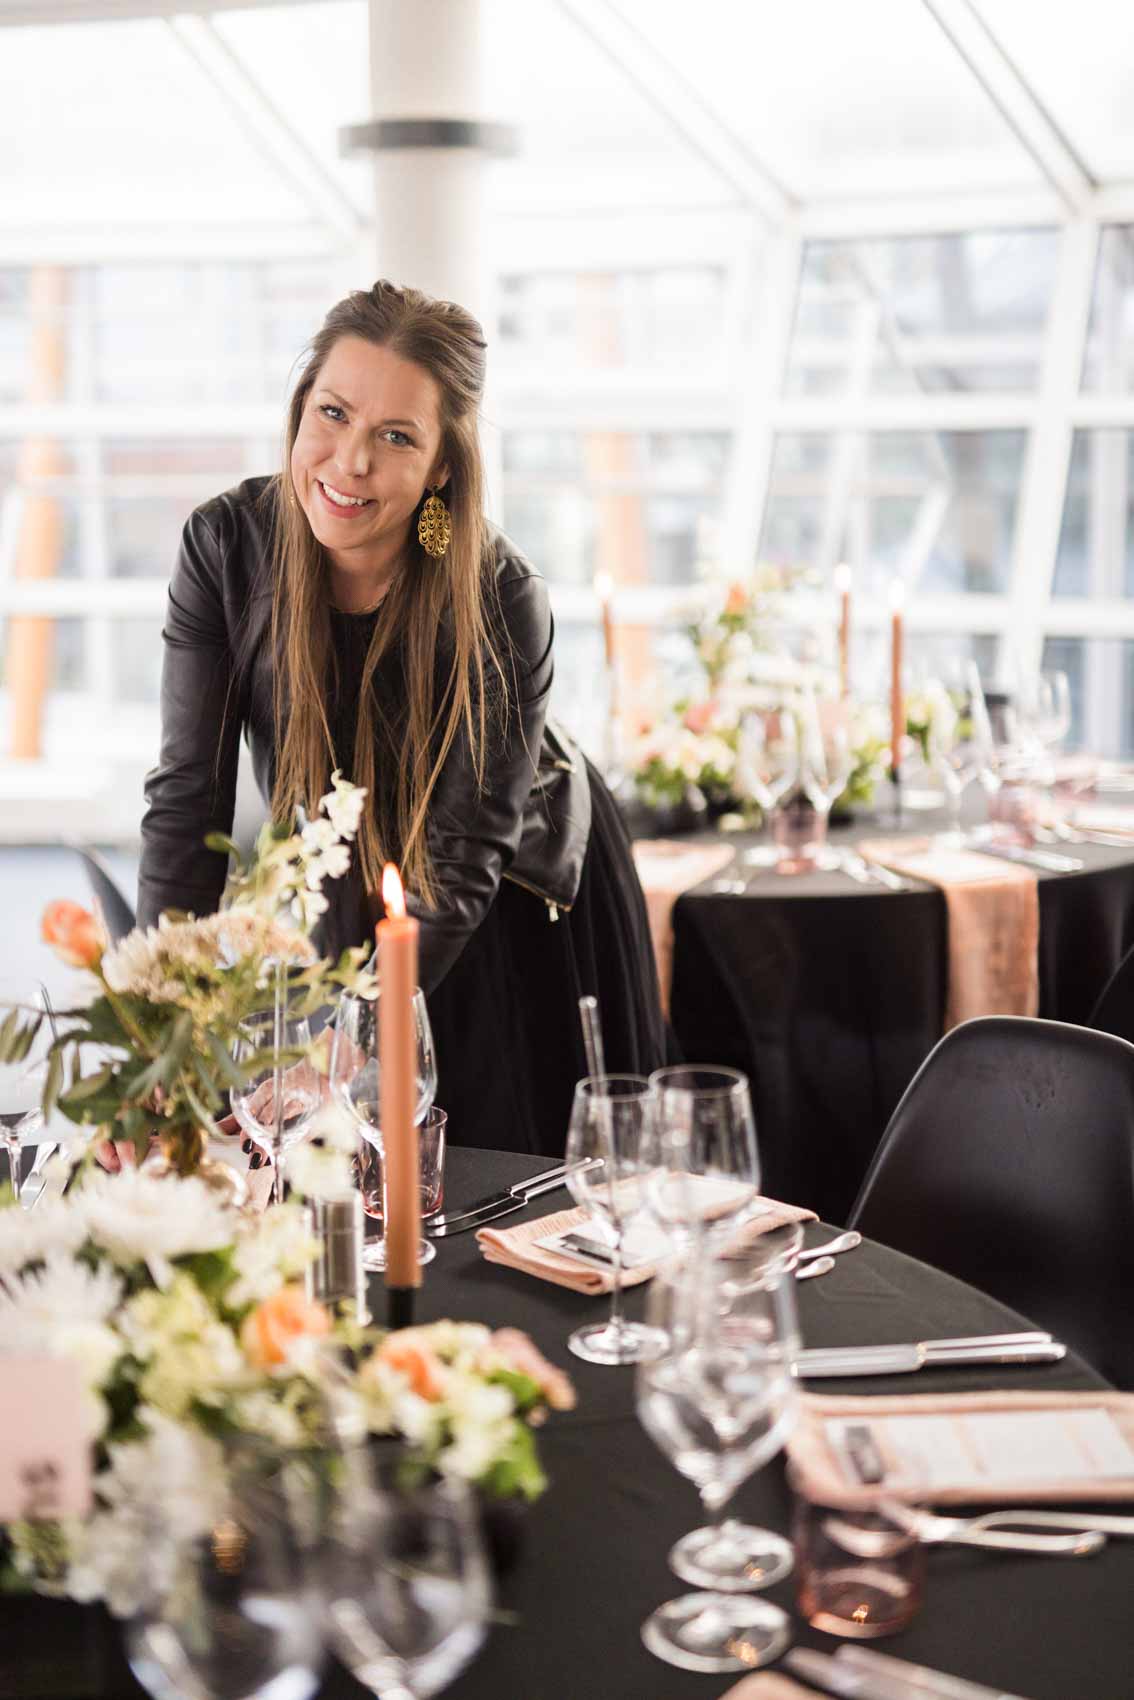 Hochzeitsplanerin Steffi Große Ostendorf dekoriert einen Hochzeitstisch mit schwarzer Tischdecke, Blumen und Kerzen in peach und weiß im Factory Hotel 